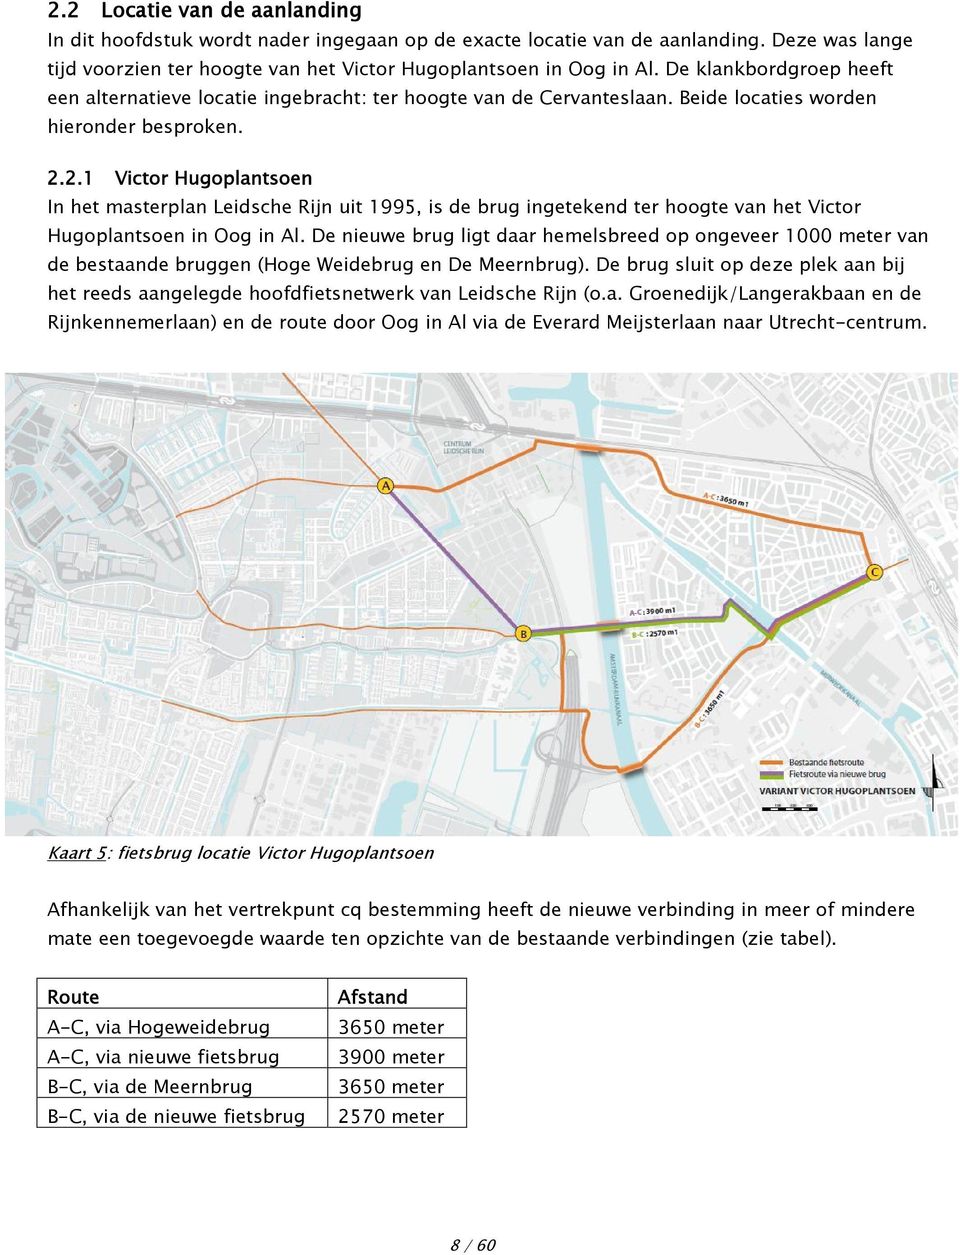 2.1 Victor Hugoplantsoen In het masterplan Leidsche Rijn uit 1995, is de brug ingetekend ter hoogte van het Victor Hugoplantsoen in Oog in Al.